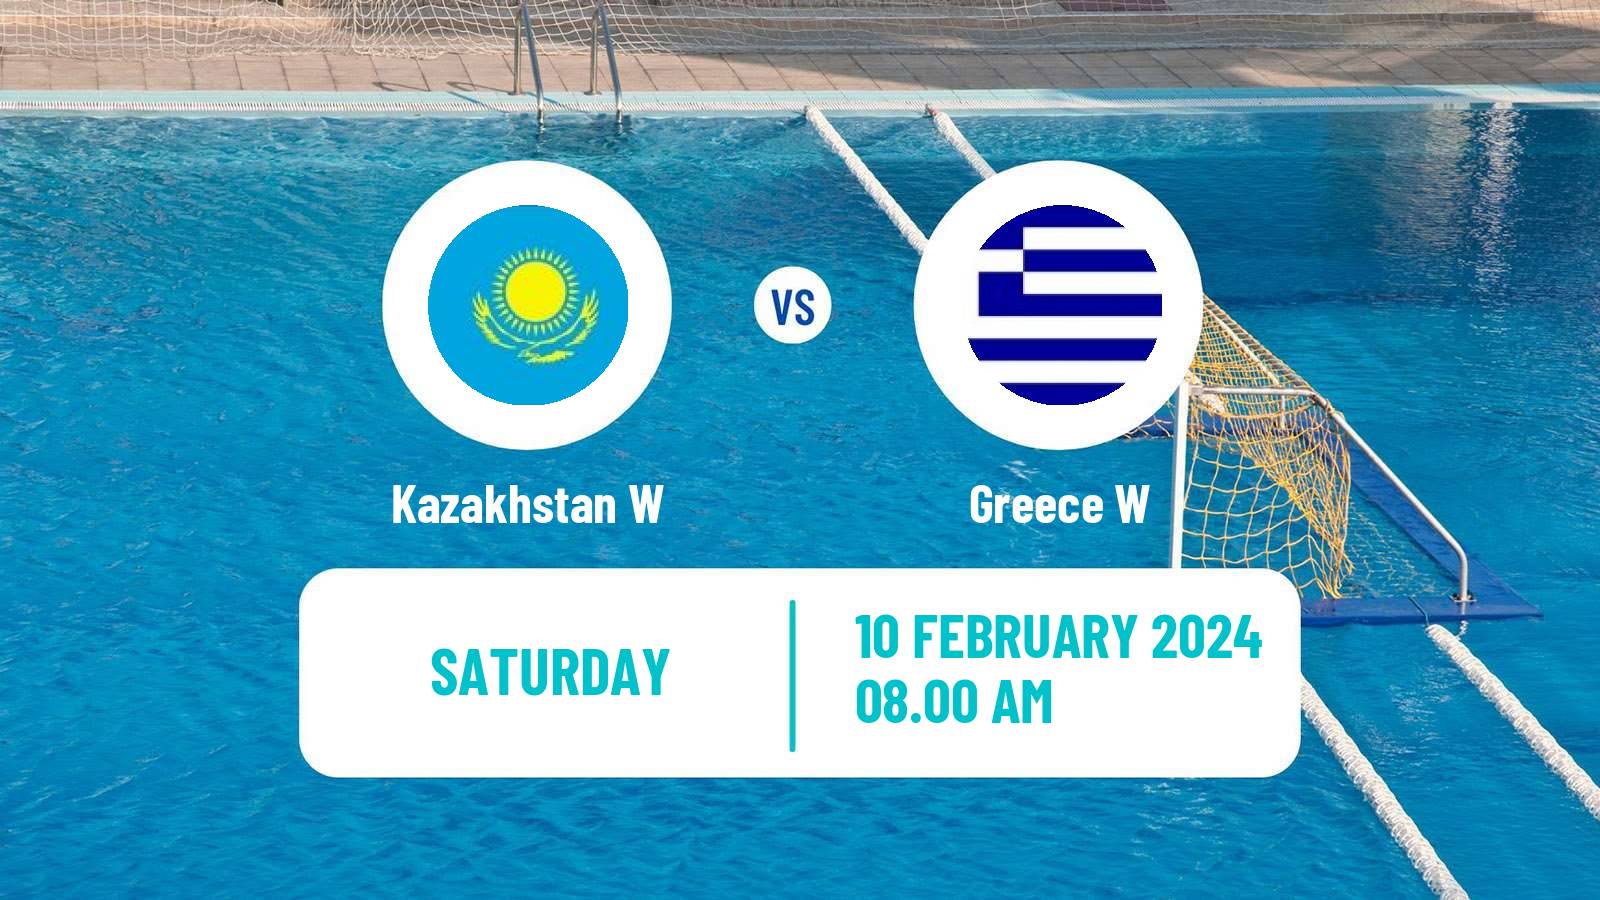 Water polo World Championship Water Polo Women Kazakhstan W - Greece W